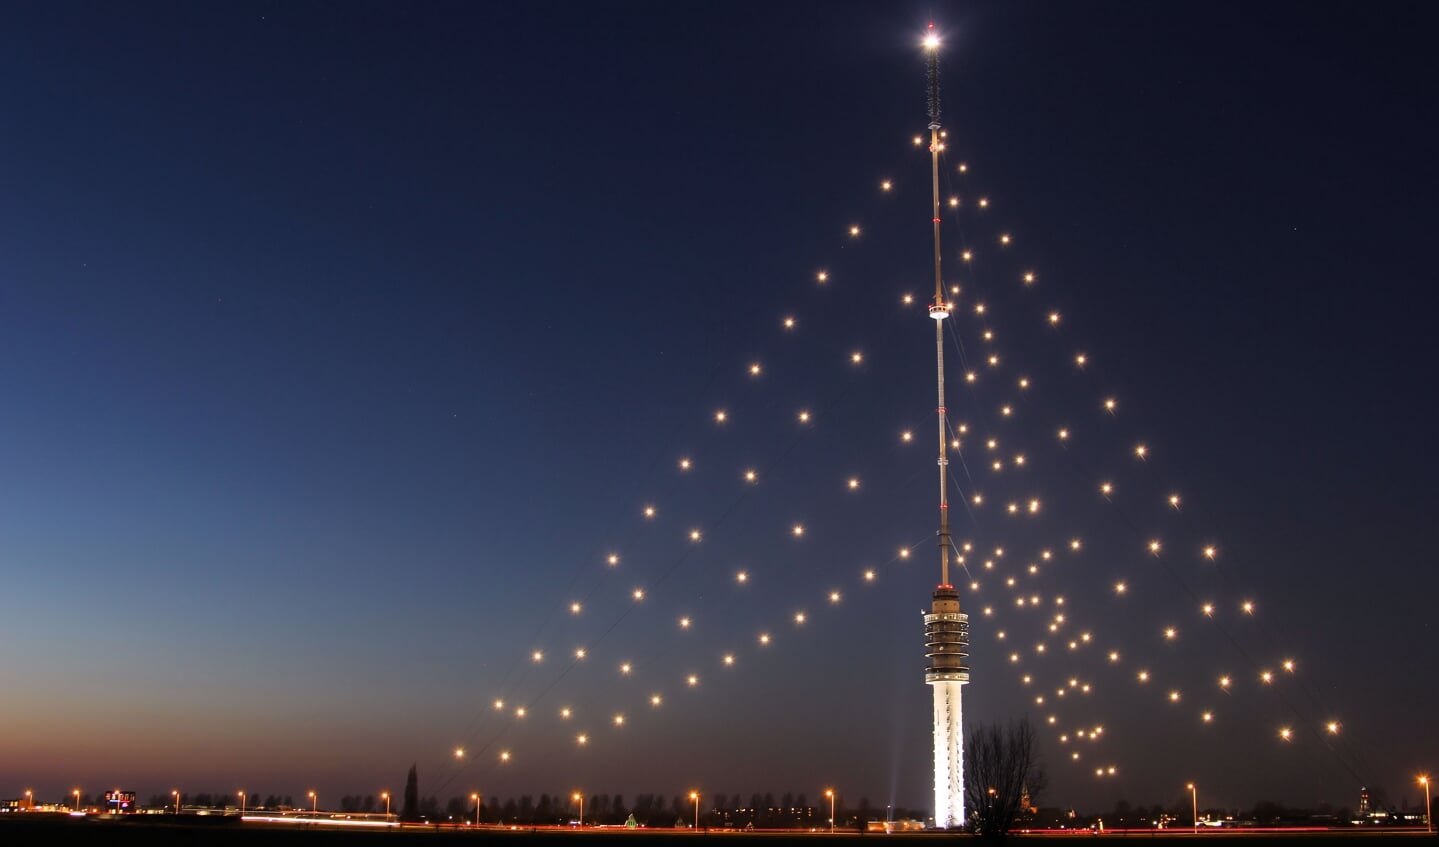 De Grootste Kerstboom in IJsselstein.